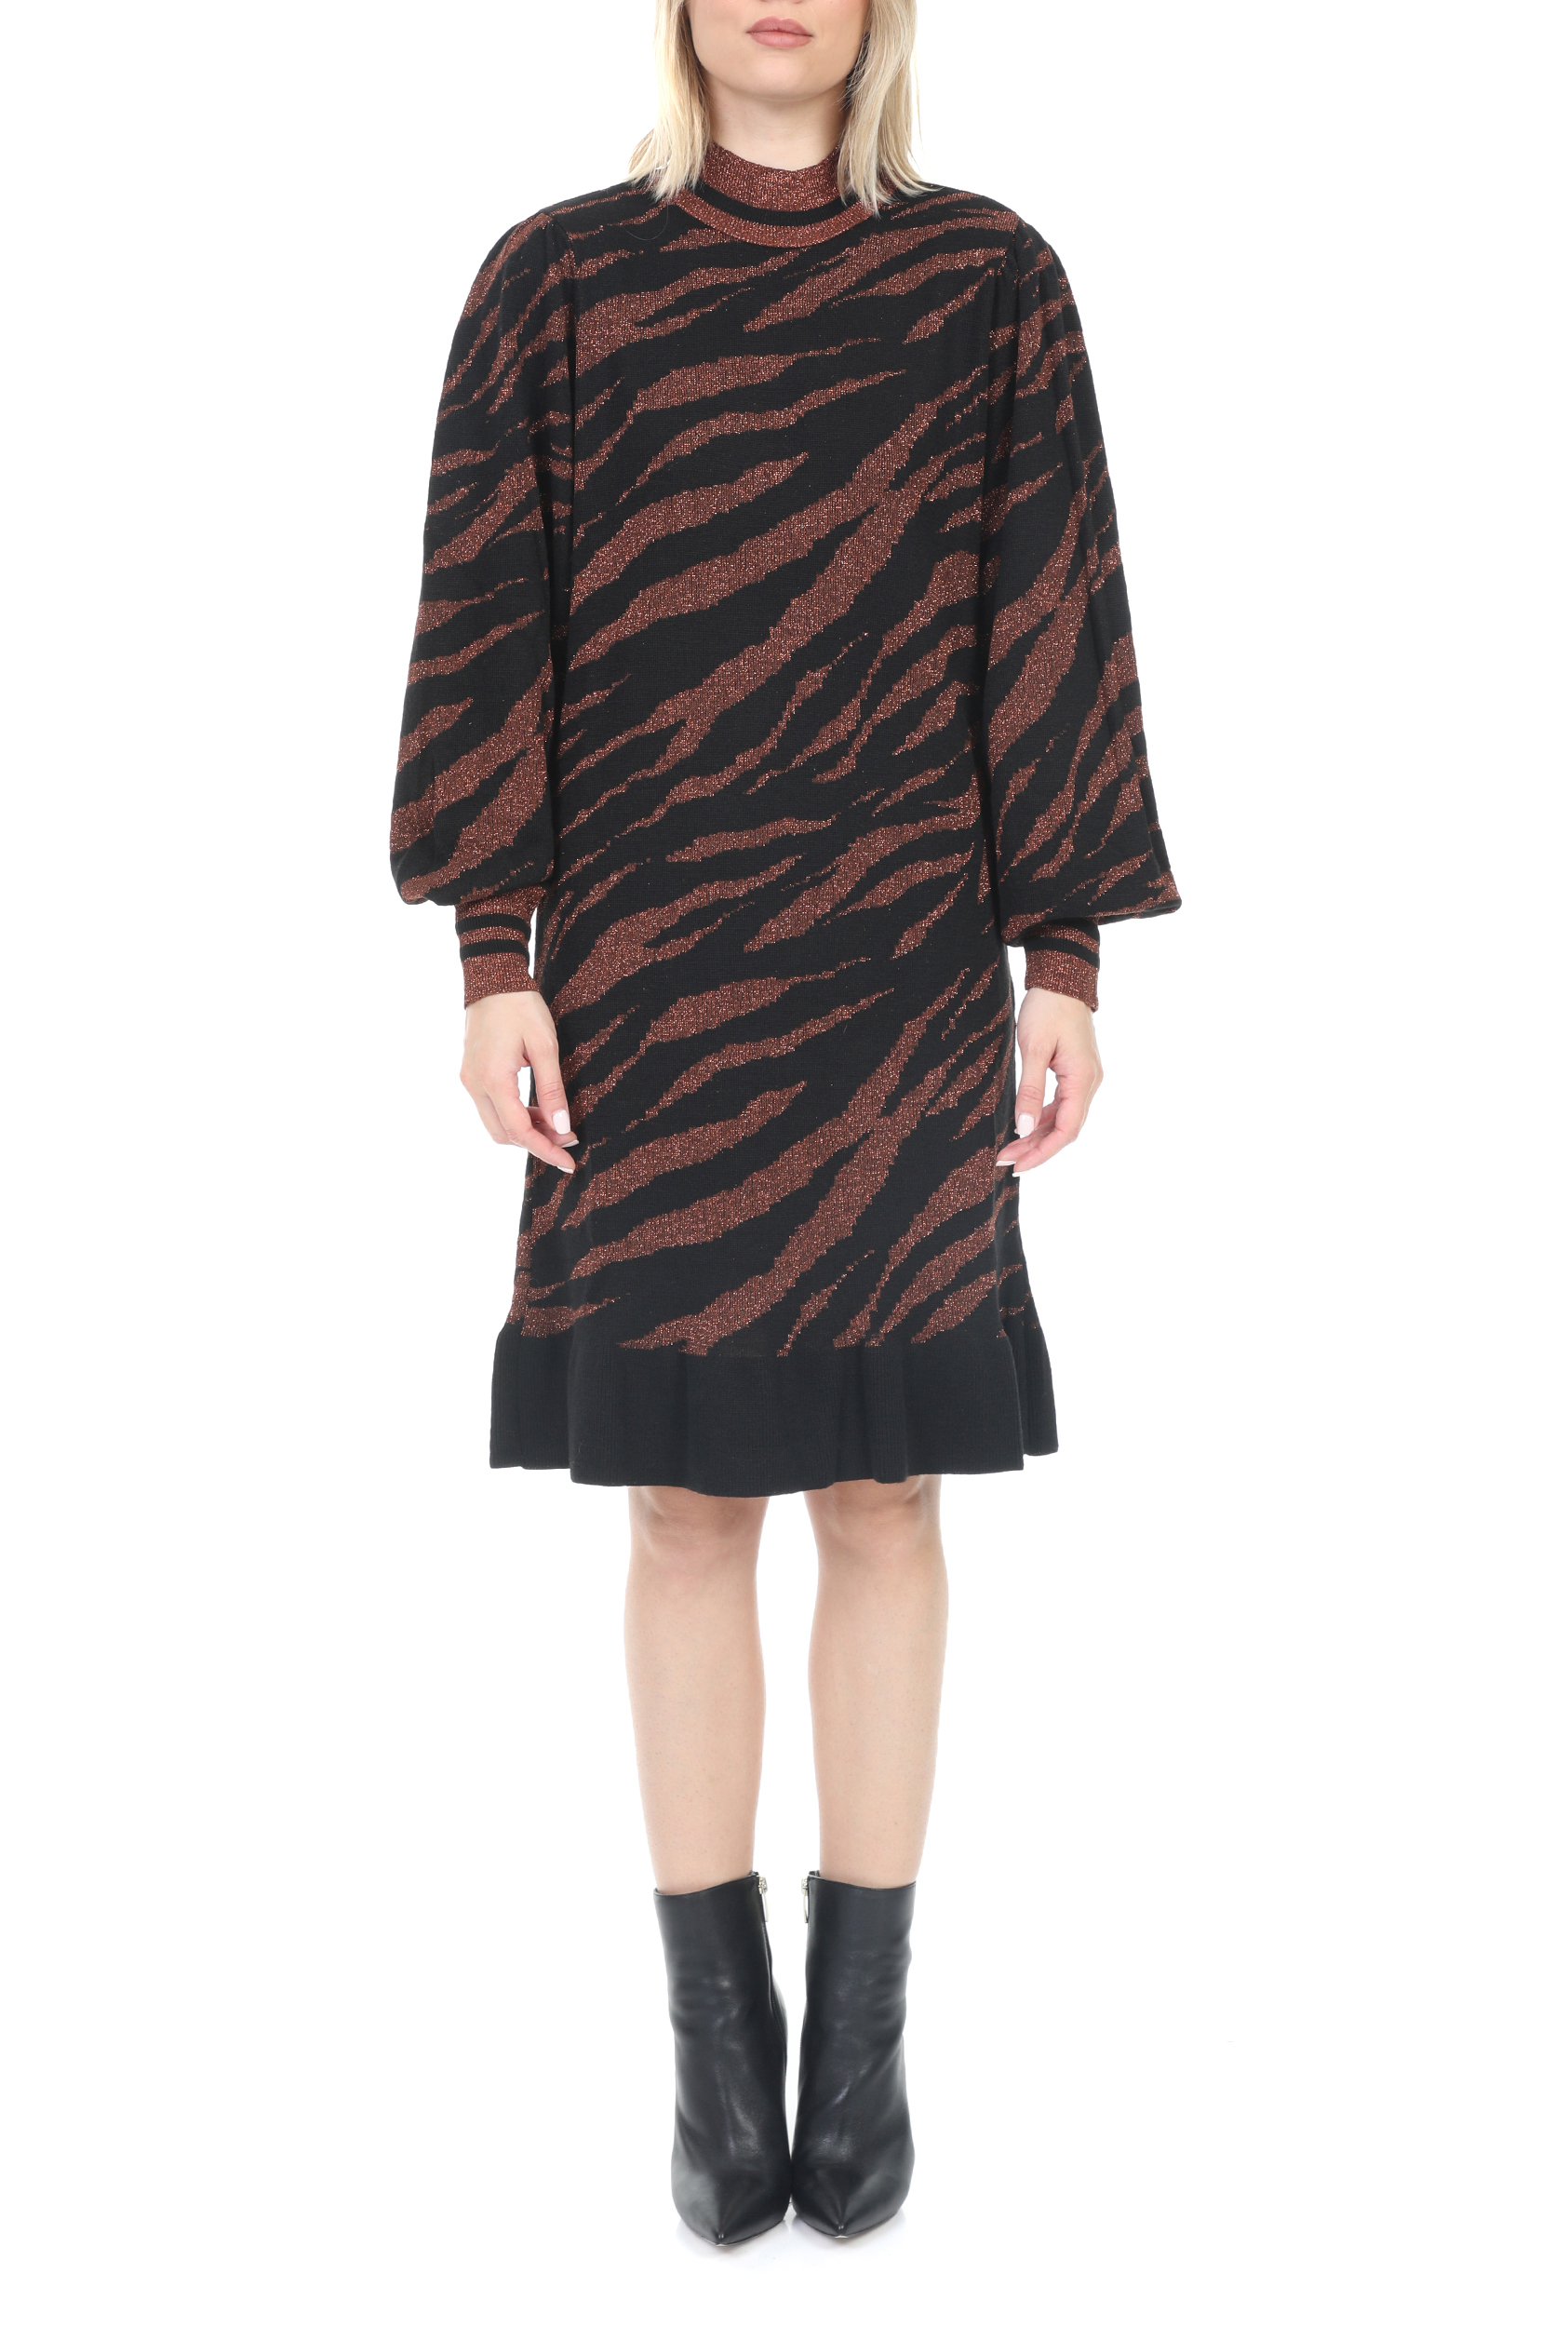 Γυναικεία/Ρούχα/Φόρεματα/Μίνι KOCCA - Γυναικείο mini φόρεμα KOCCA GUARDIAN μαύρο καφέ